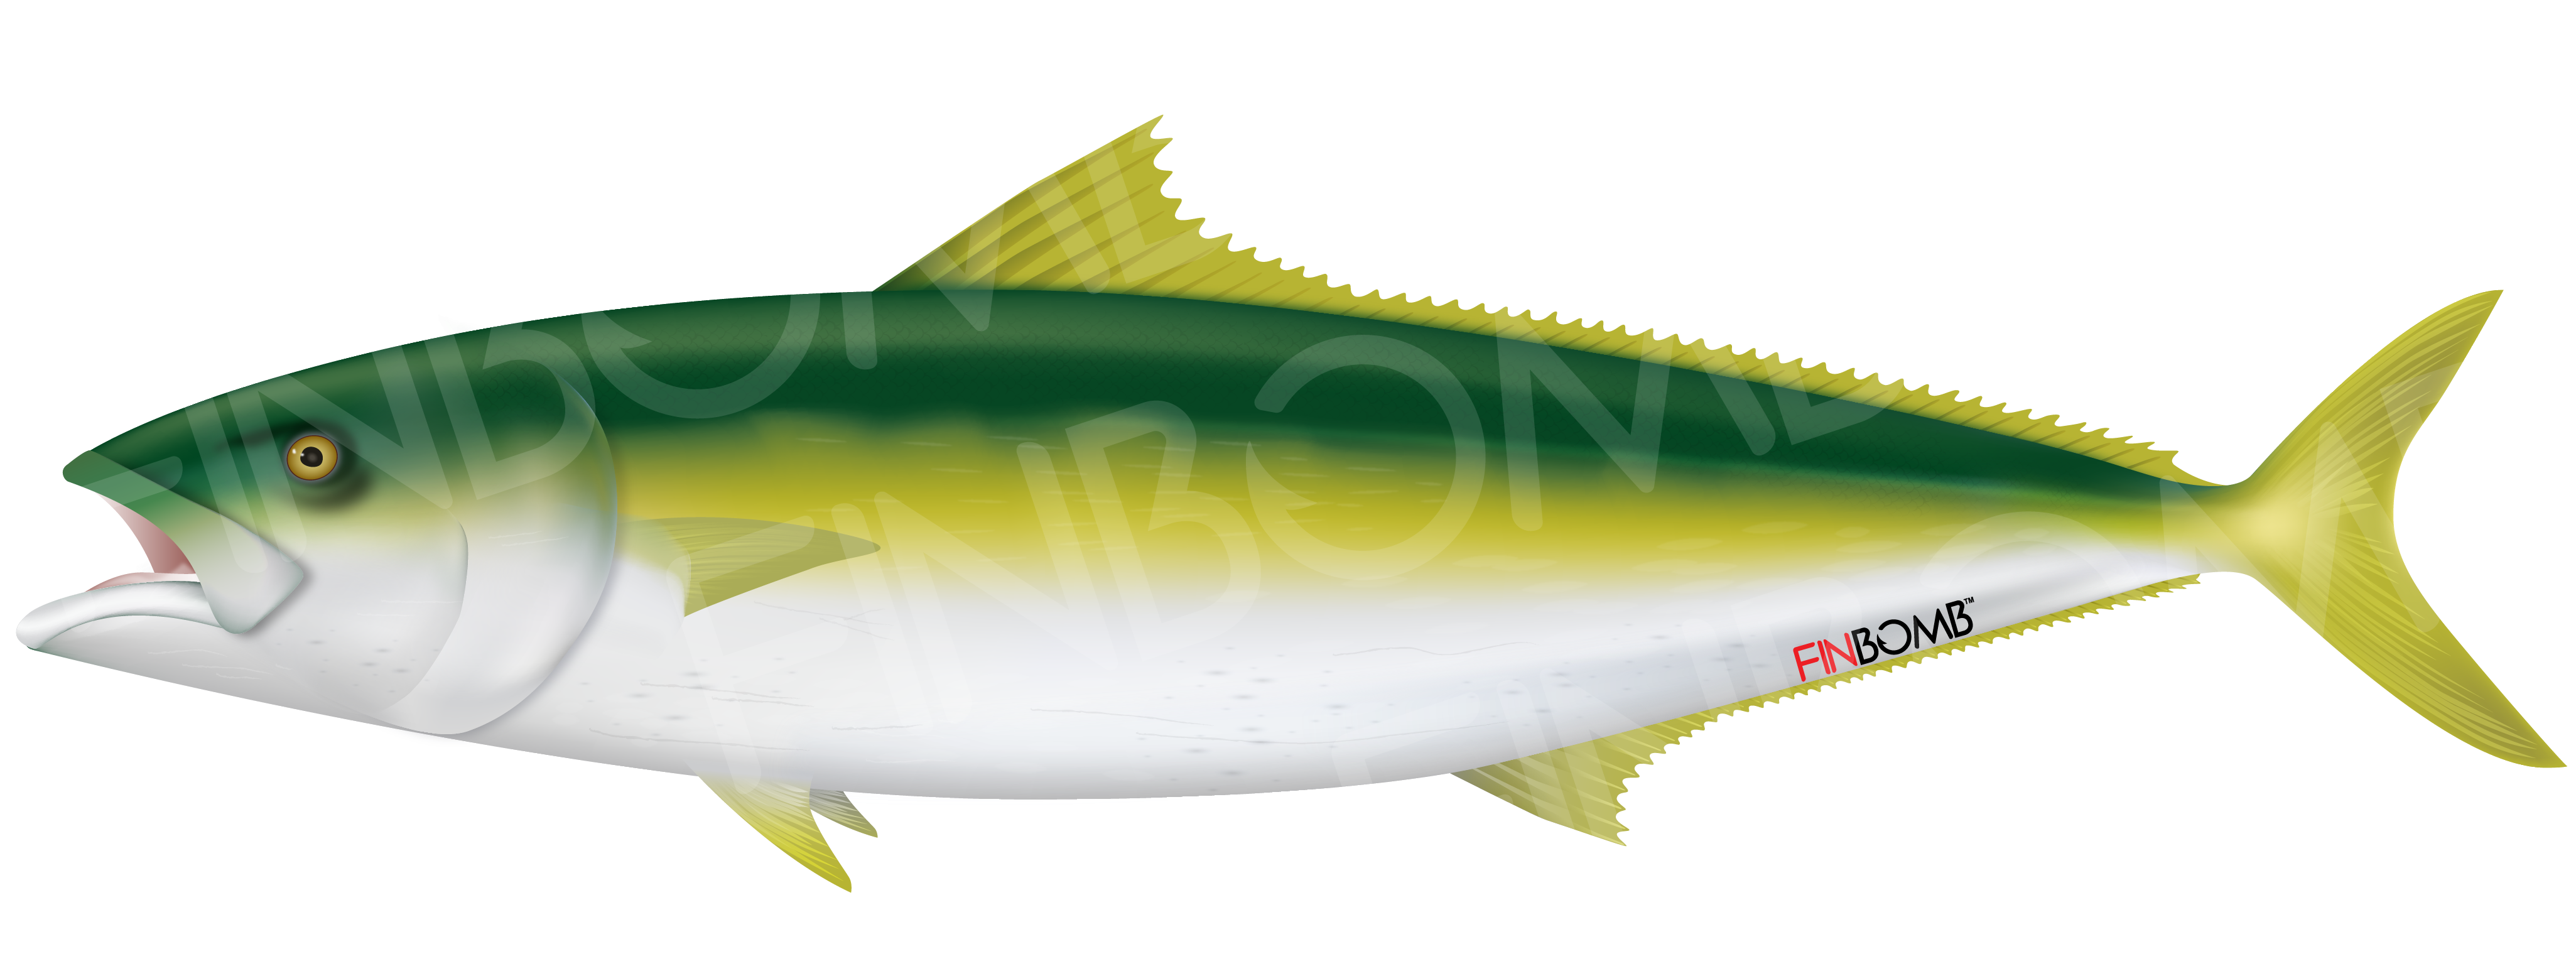 Yellowtail - Albacore Fish (4163x2083)